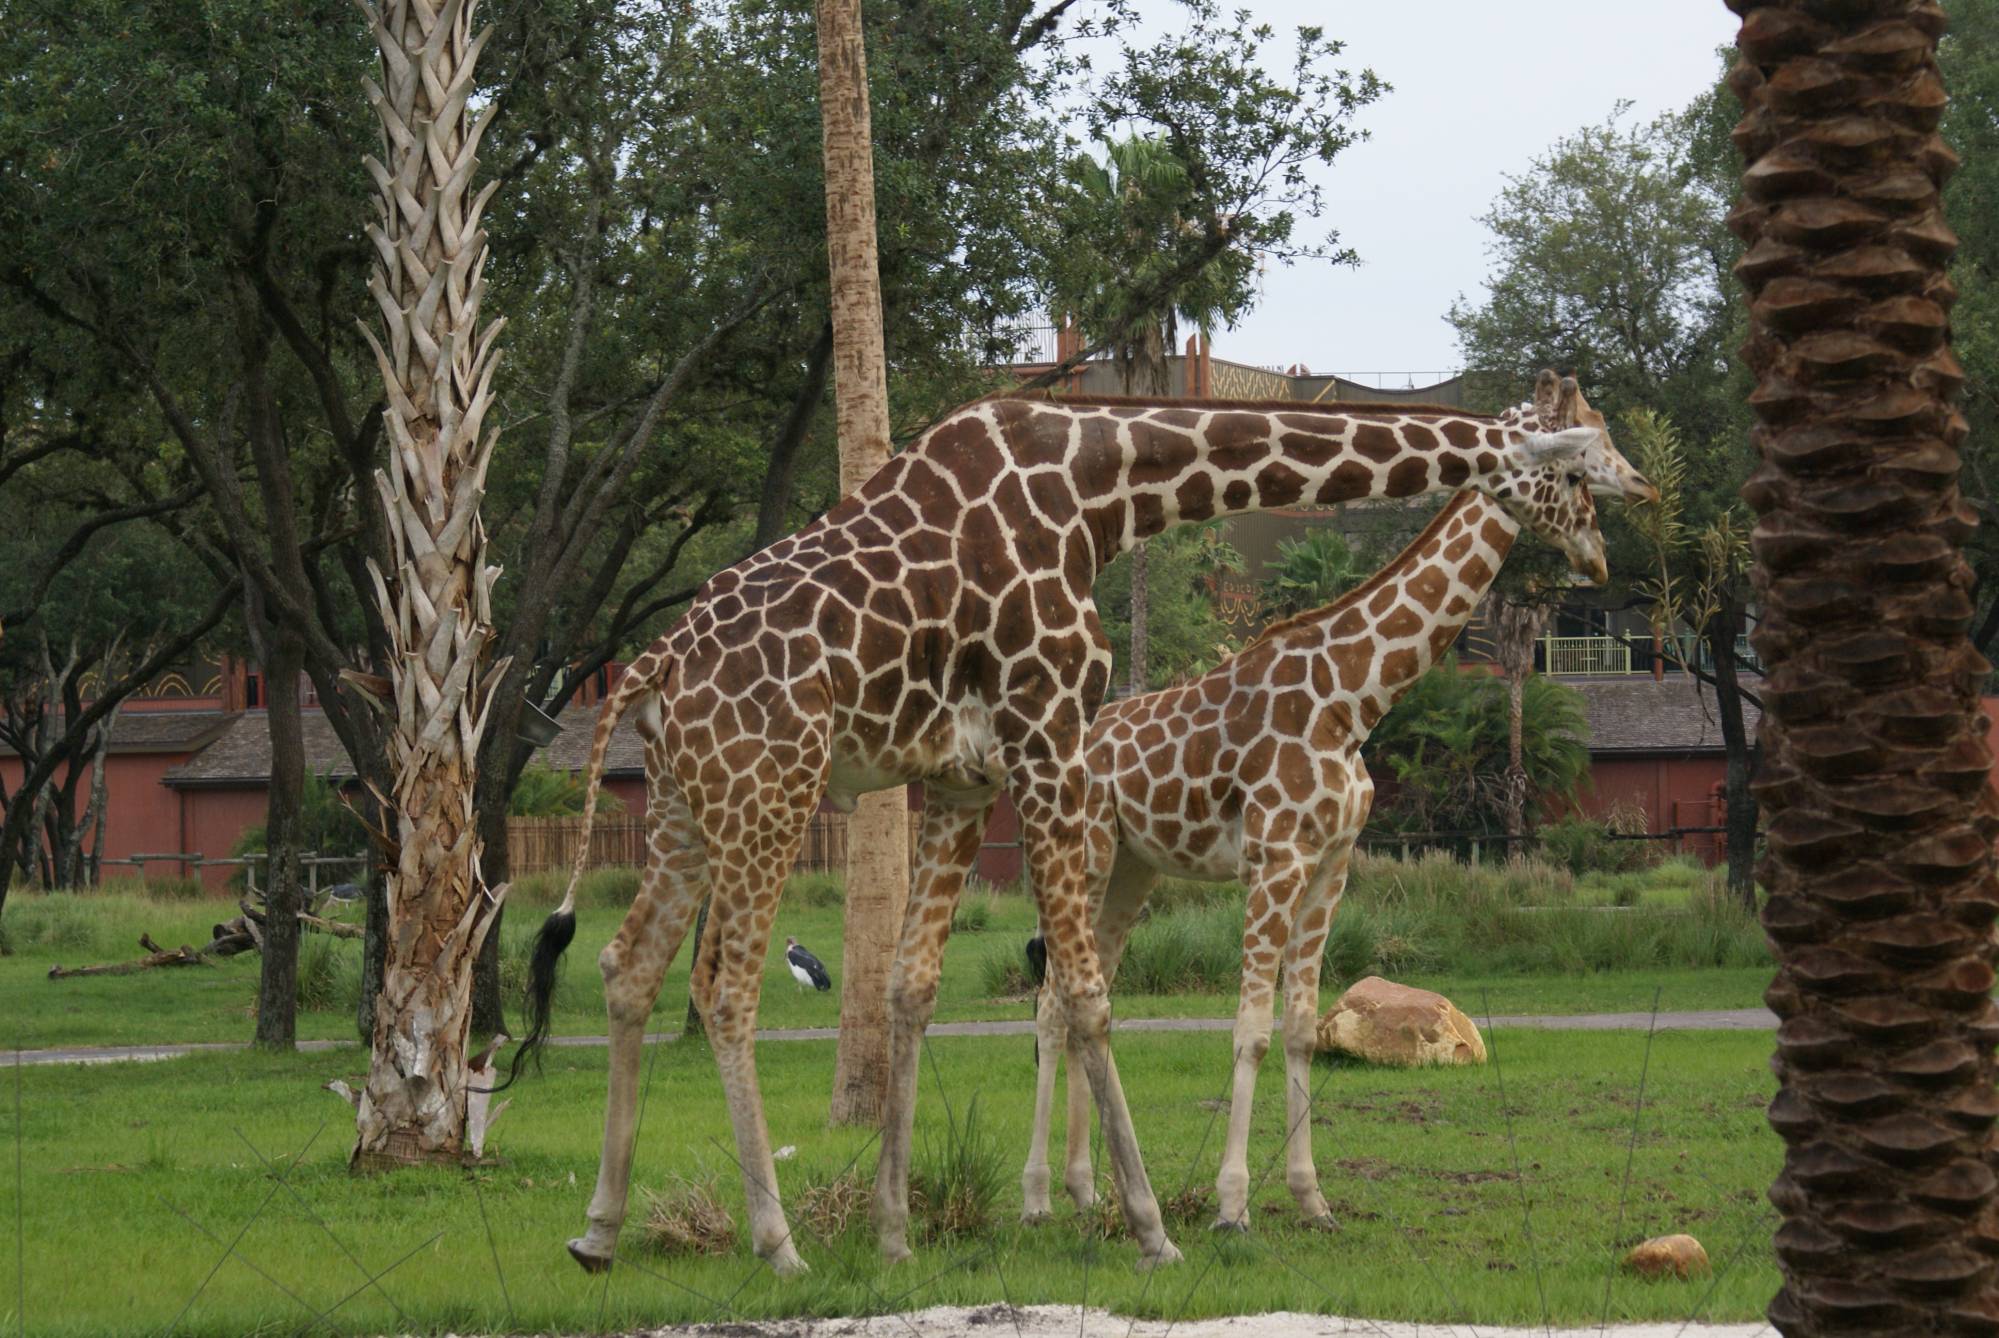 Giraffe at Sanaa